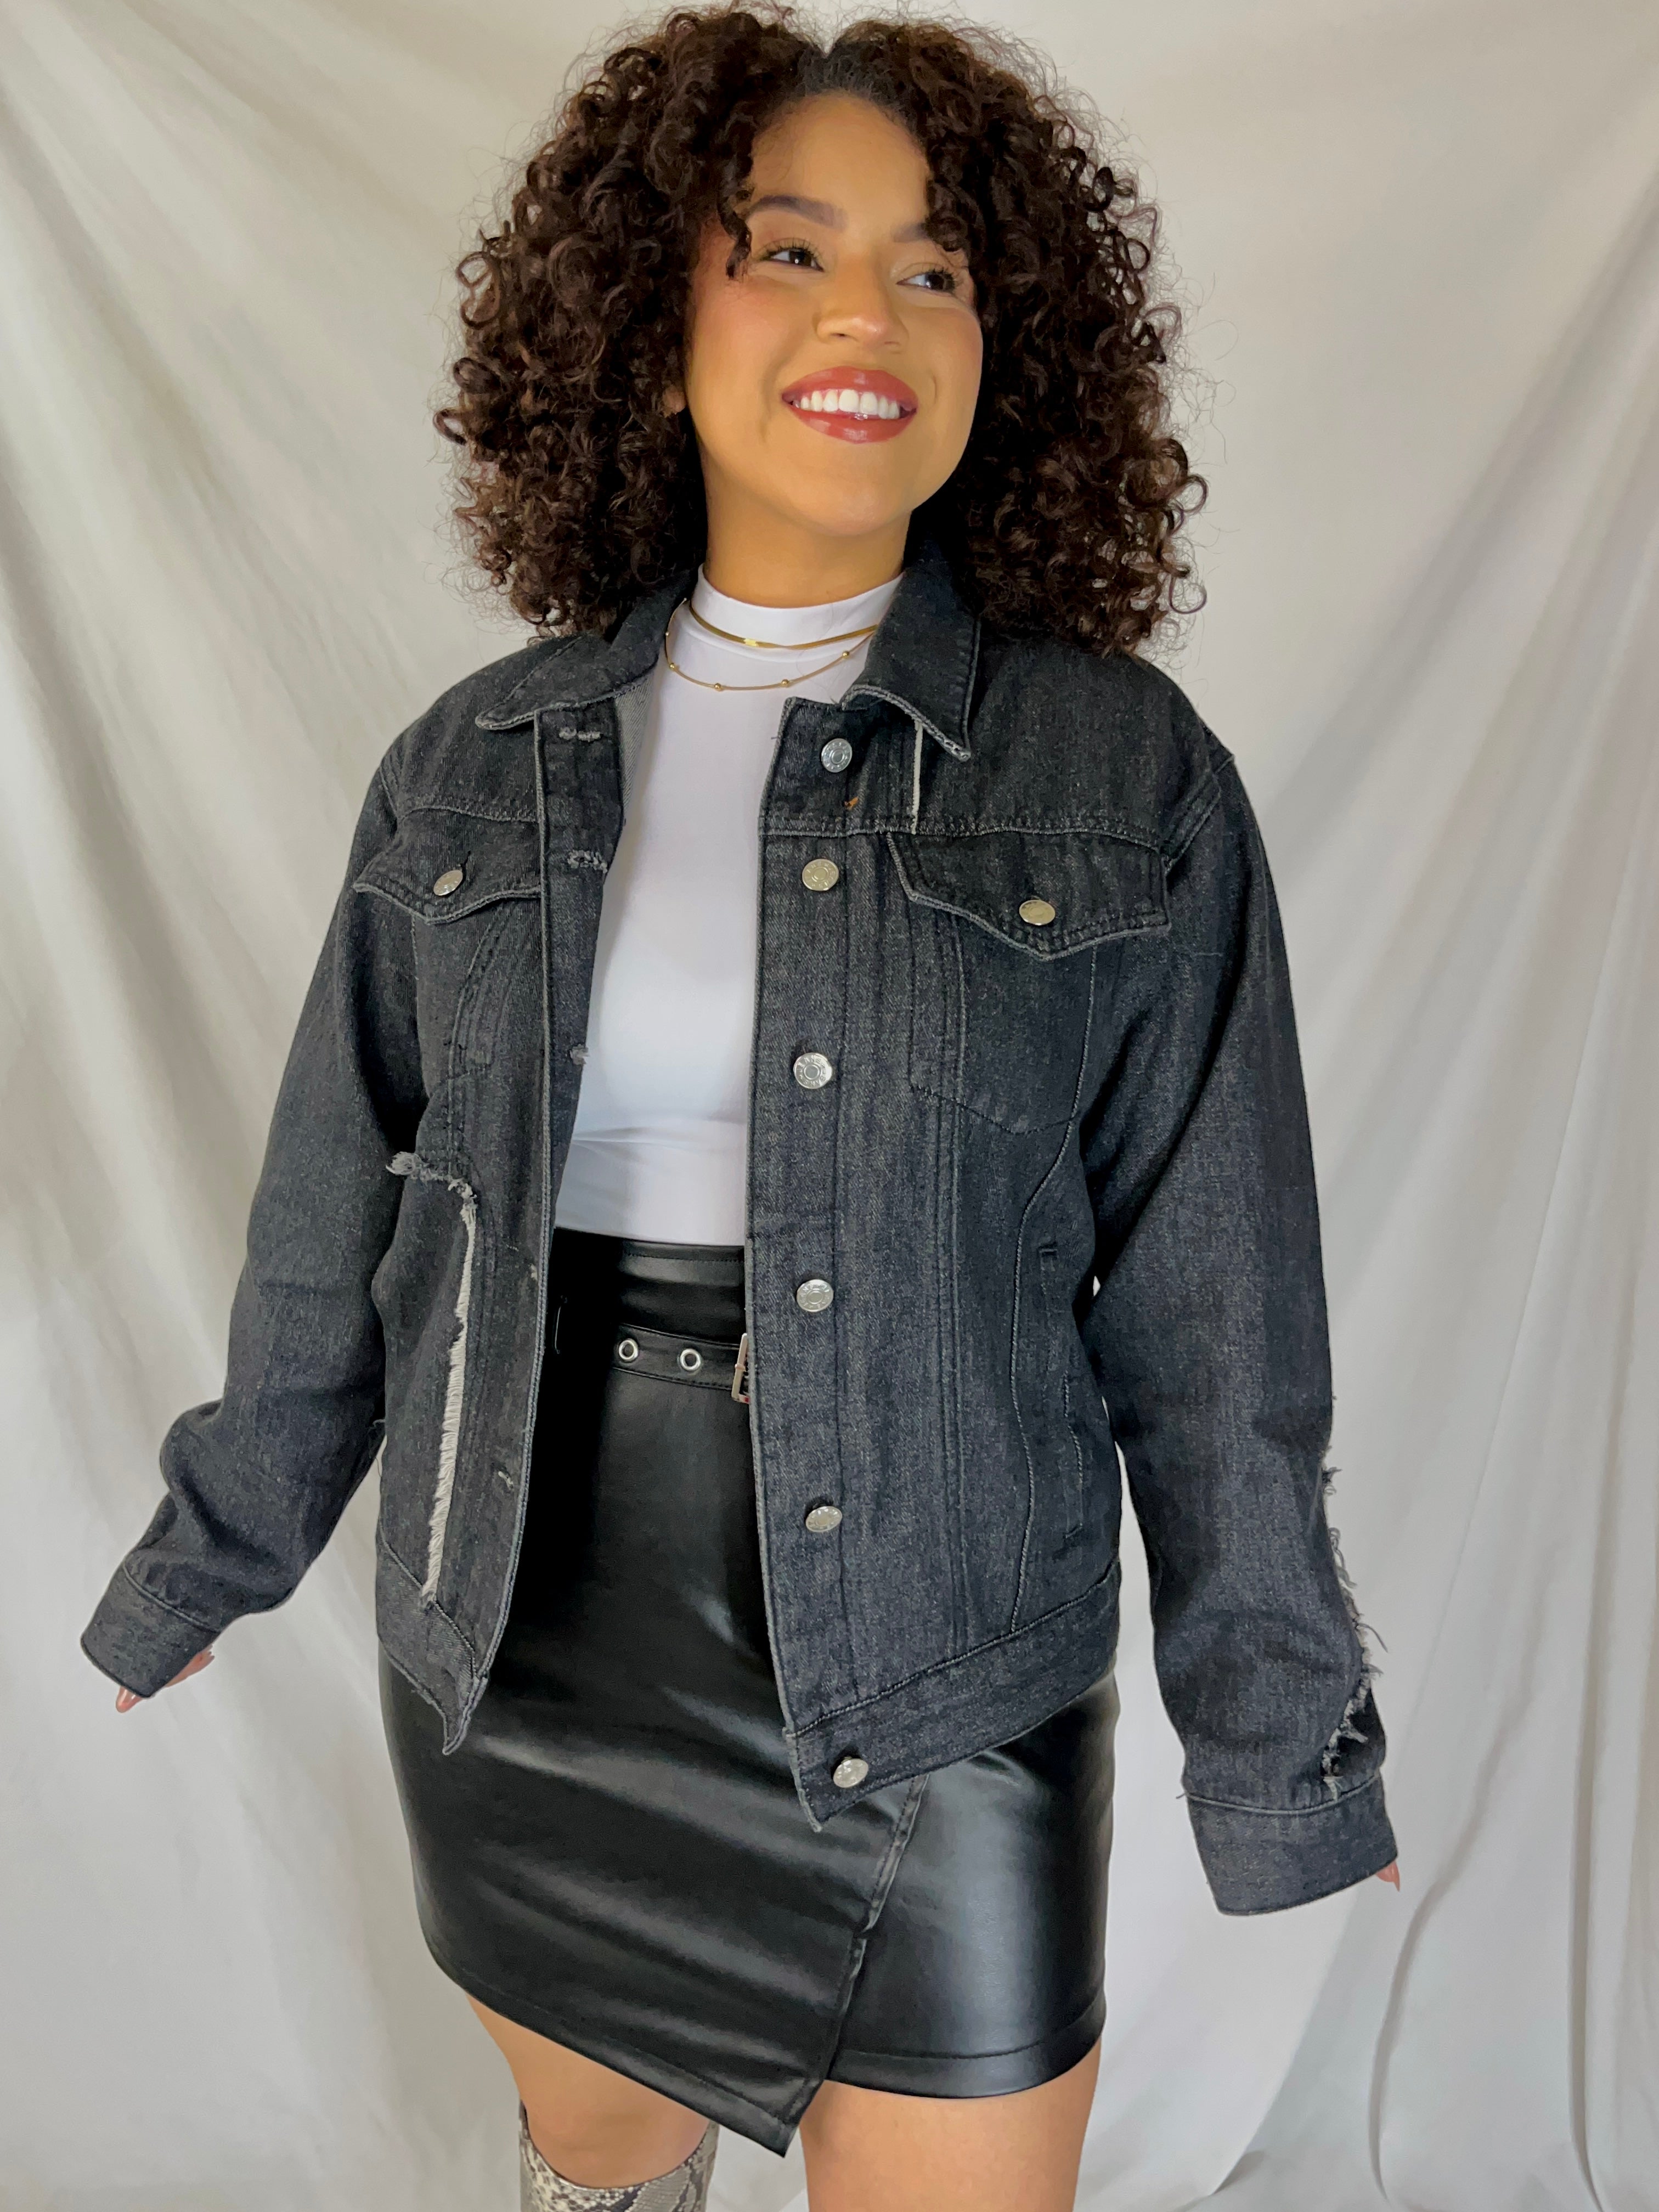 Abercrombie & Fitch Women's Distressed Black Denim Jacket Size S. | eBay